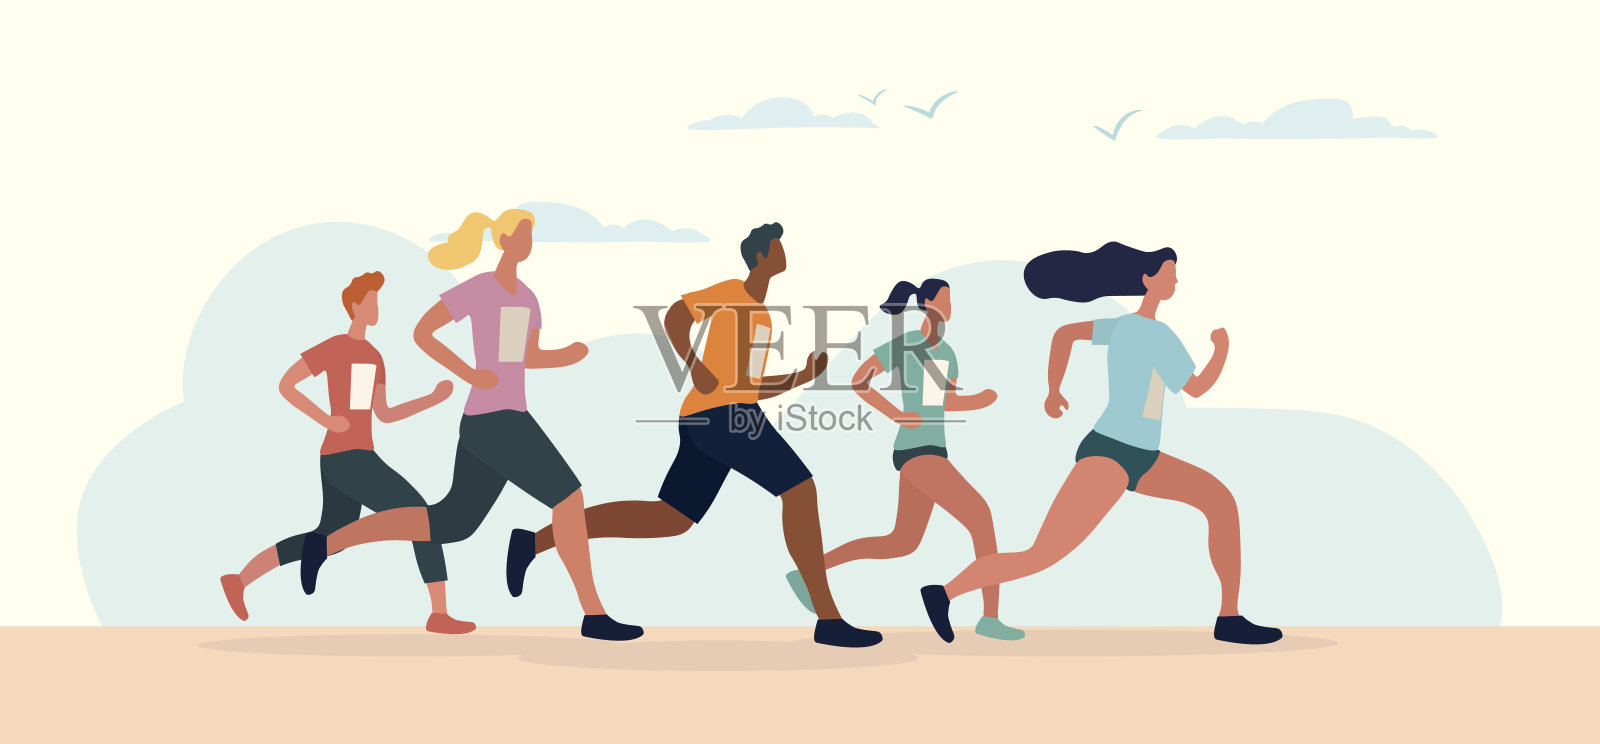 参加马拉松比赛的各式各样的运动员插画图片素材